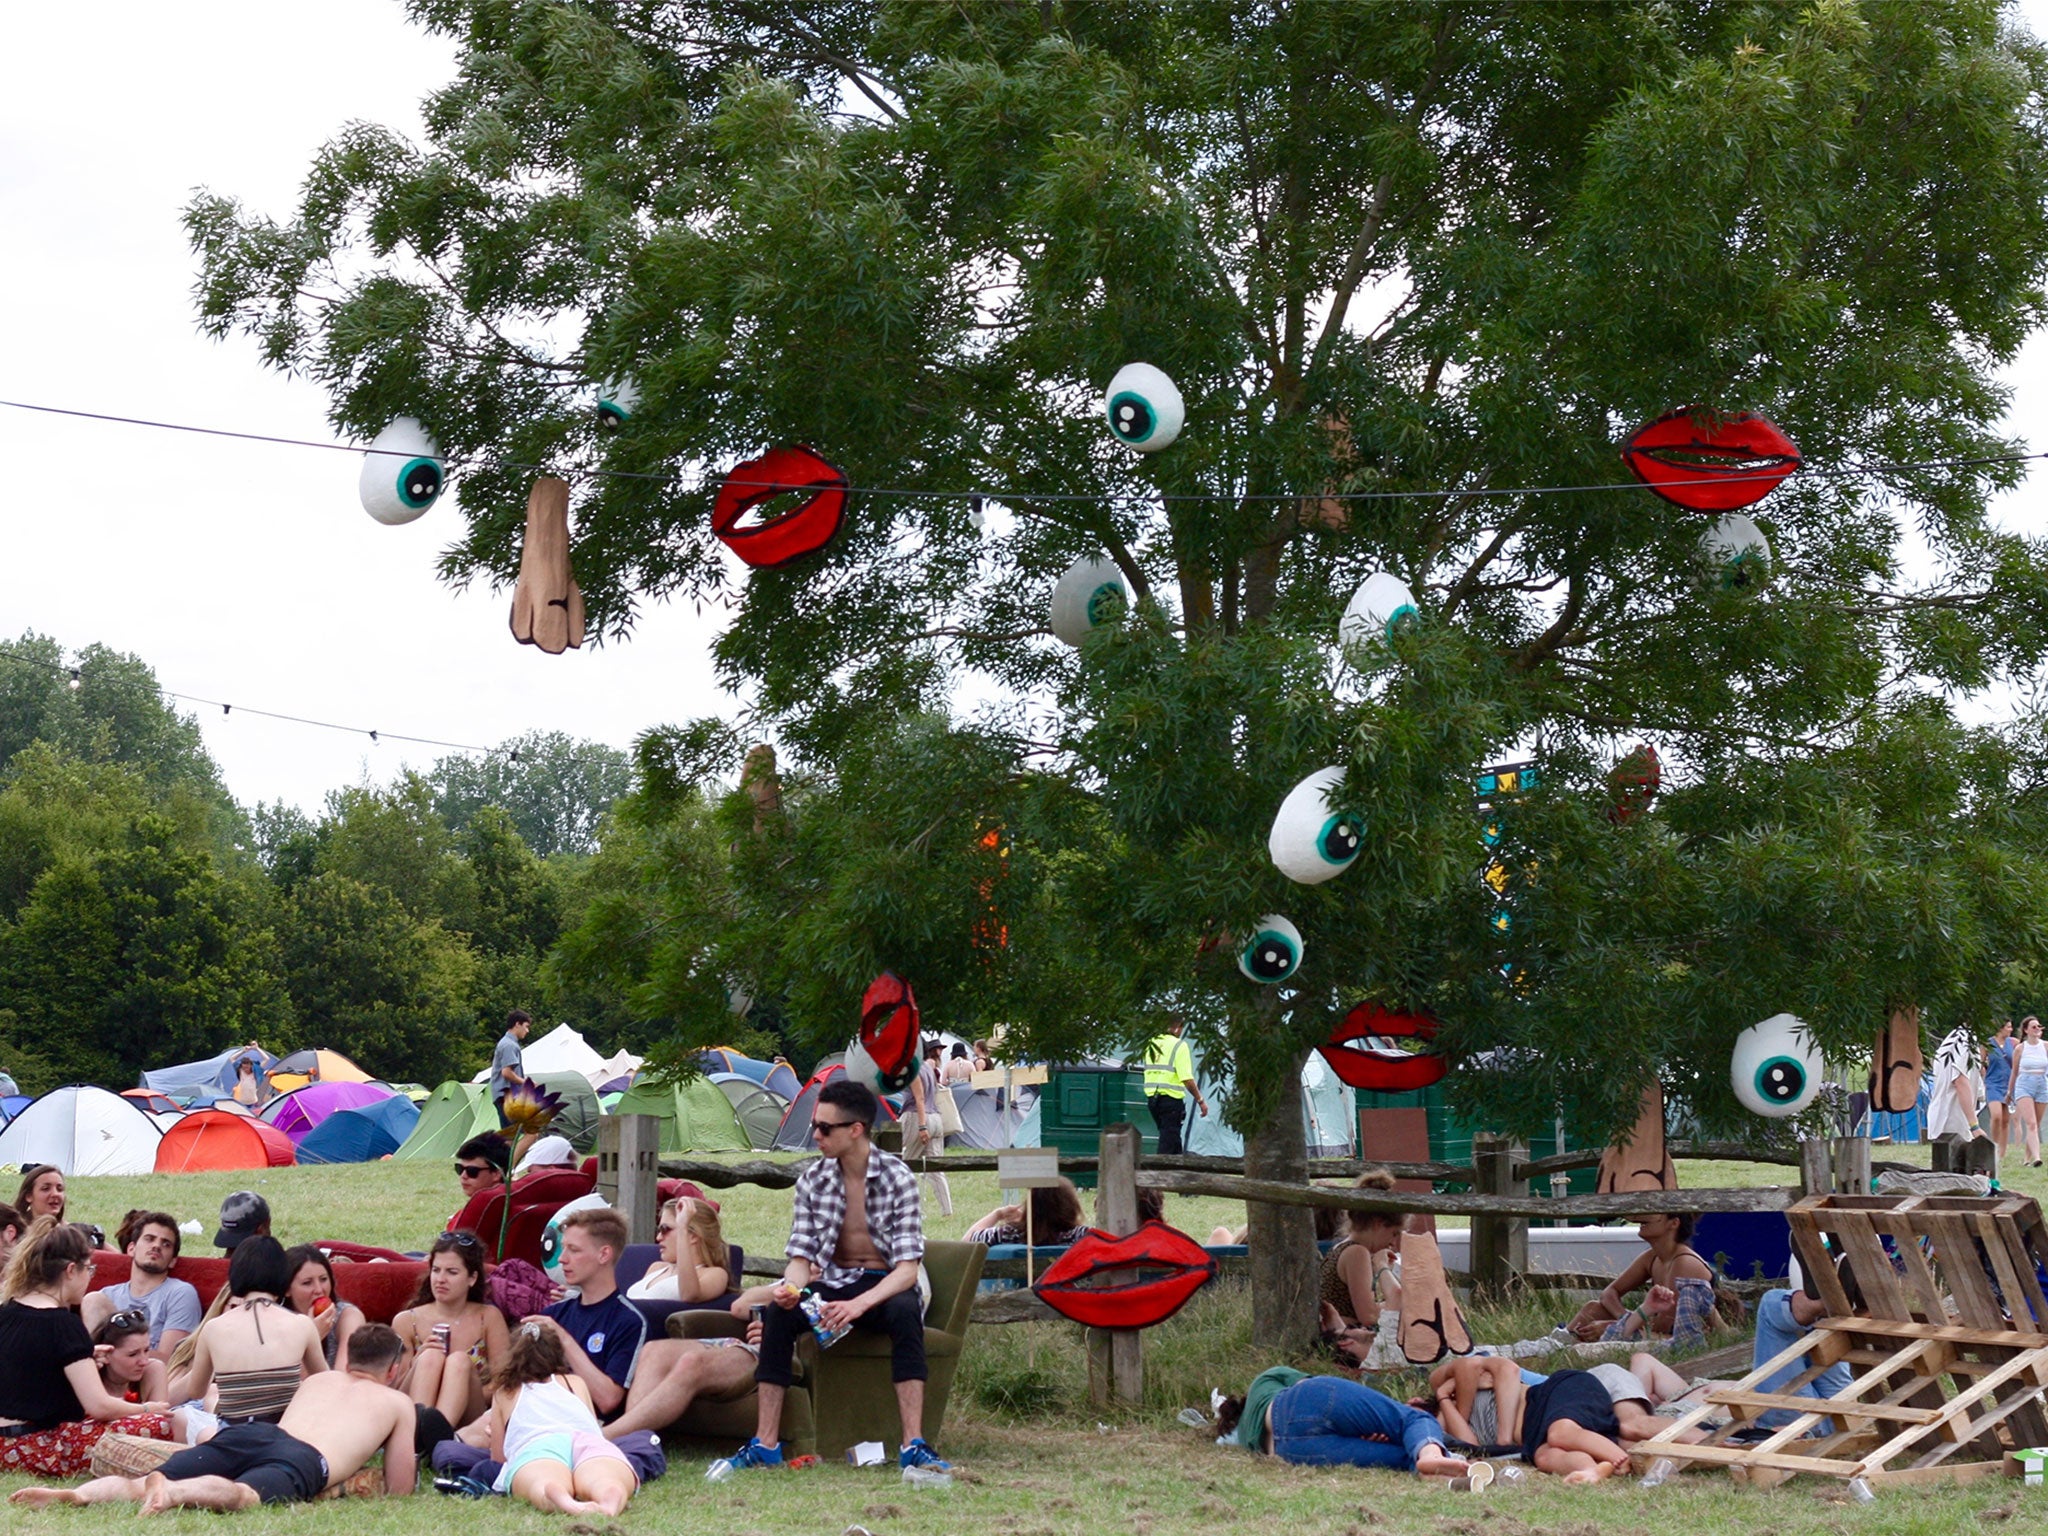 Festival-goers gather under Josie Tucker's tree